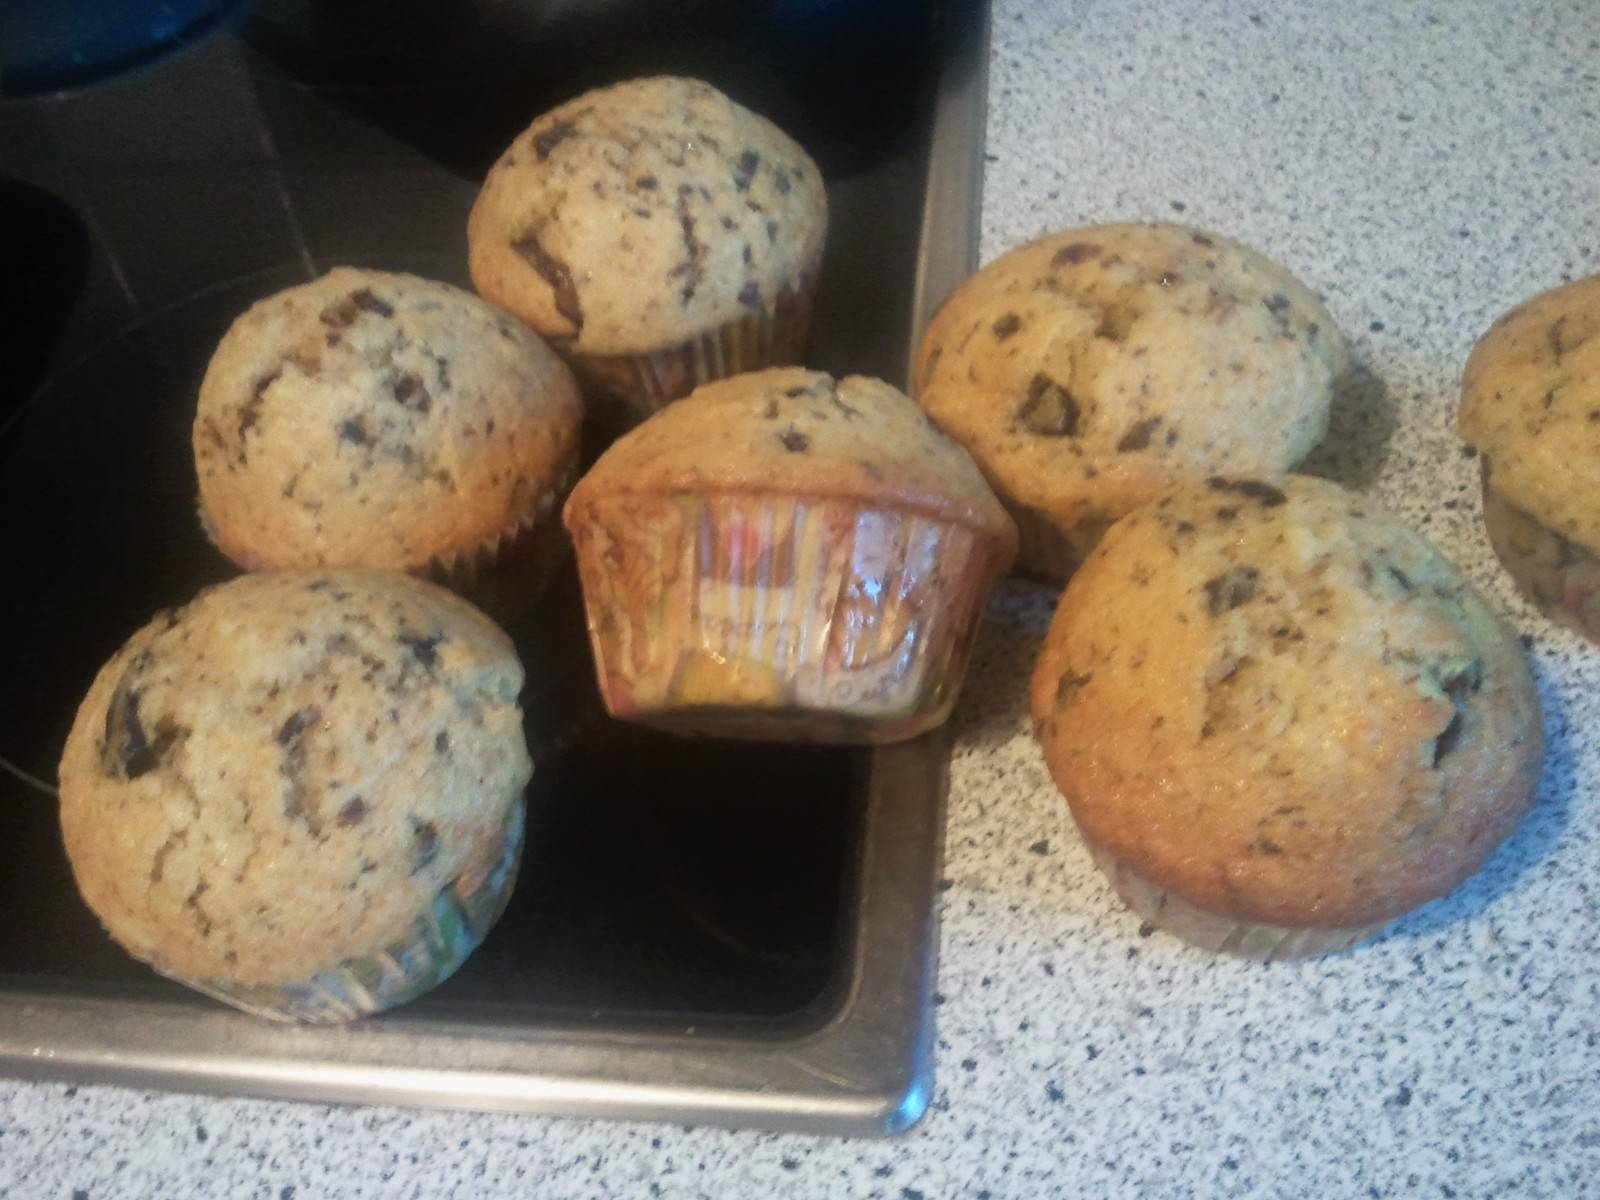 Power Muffins